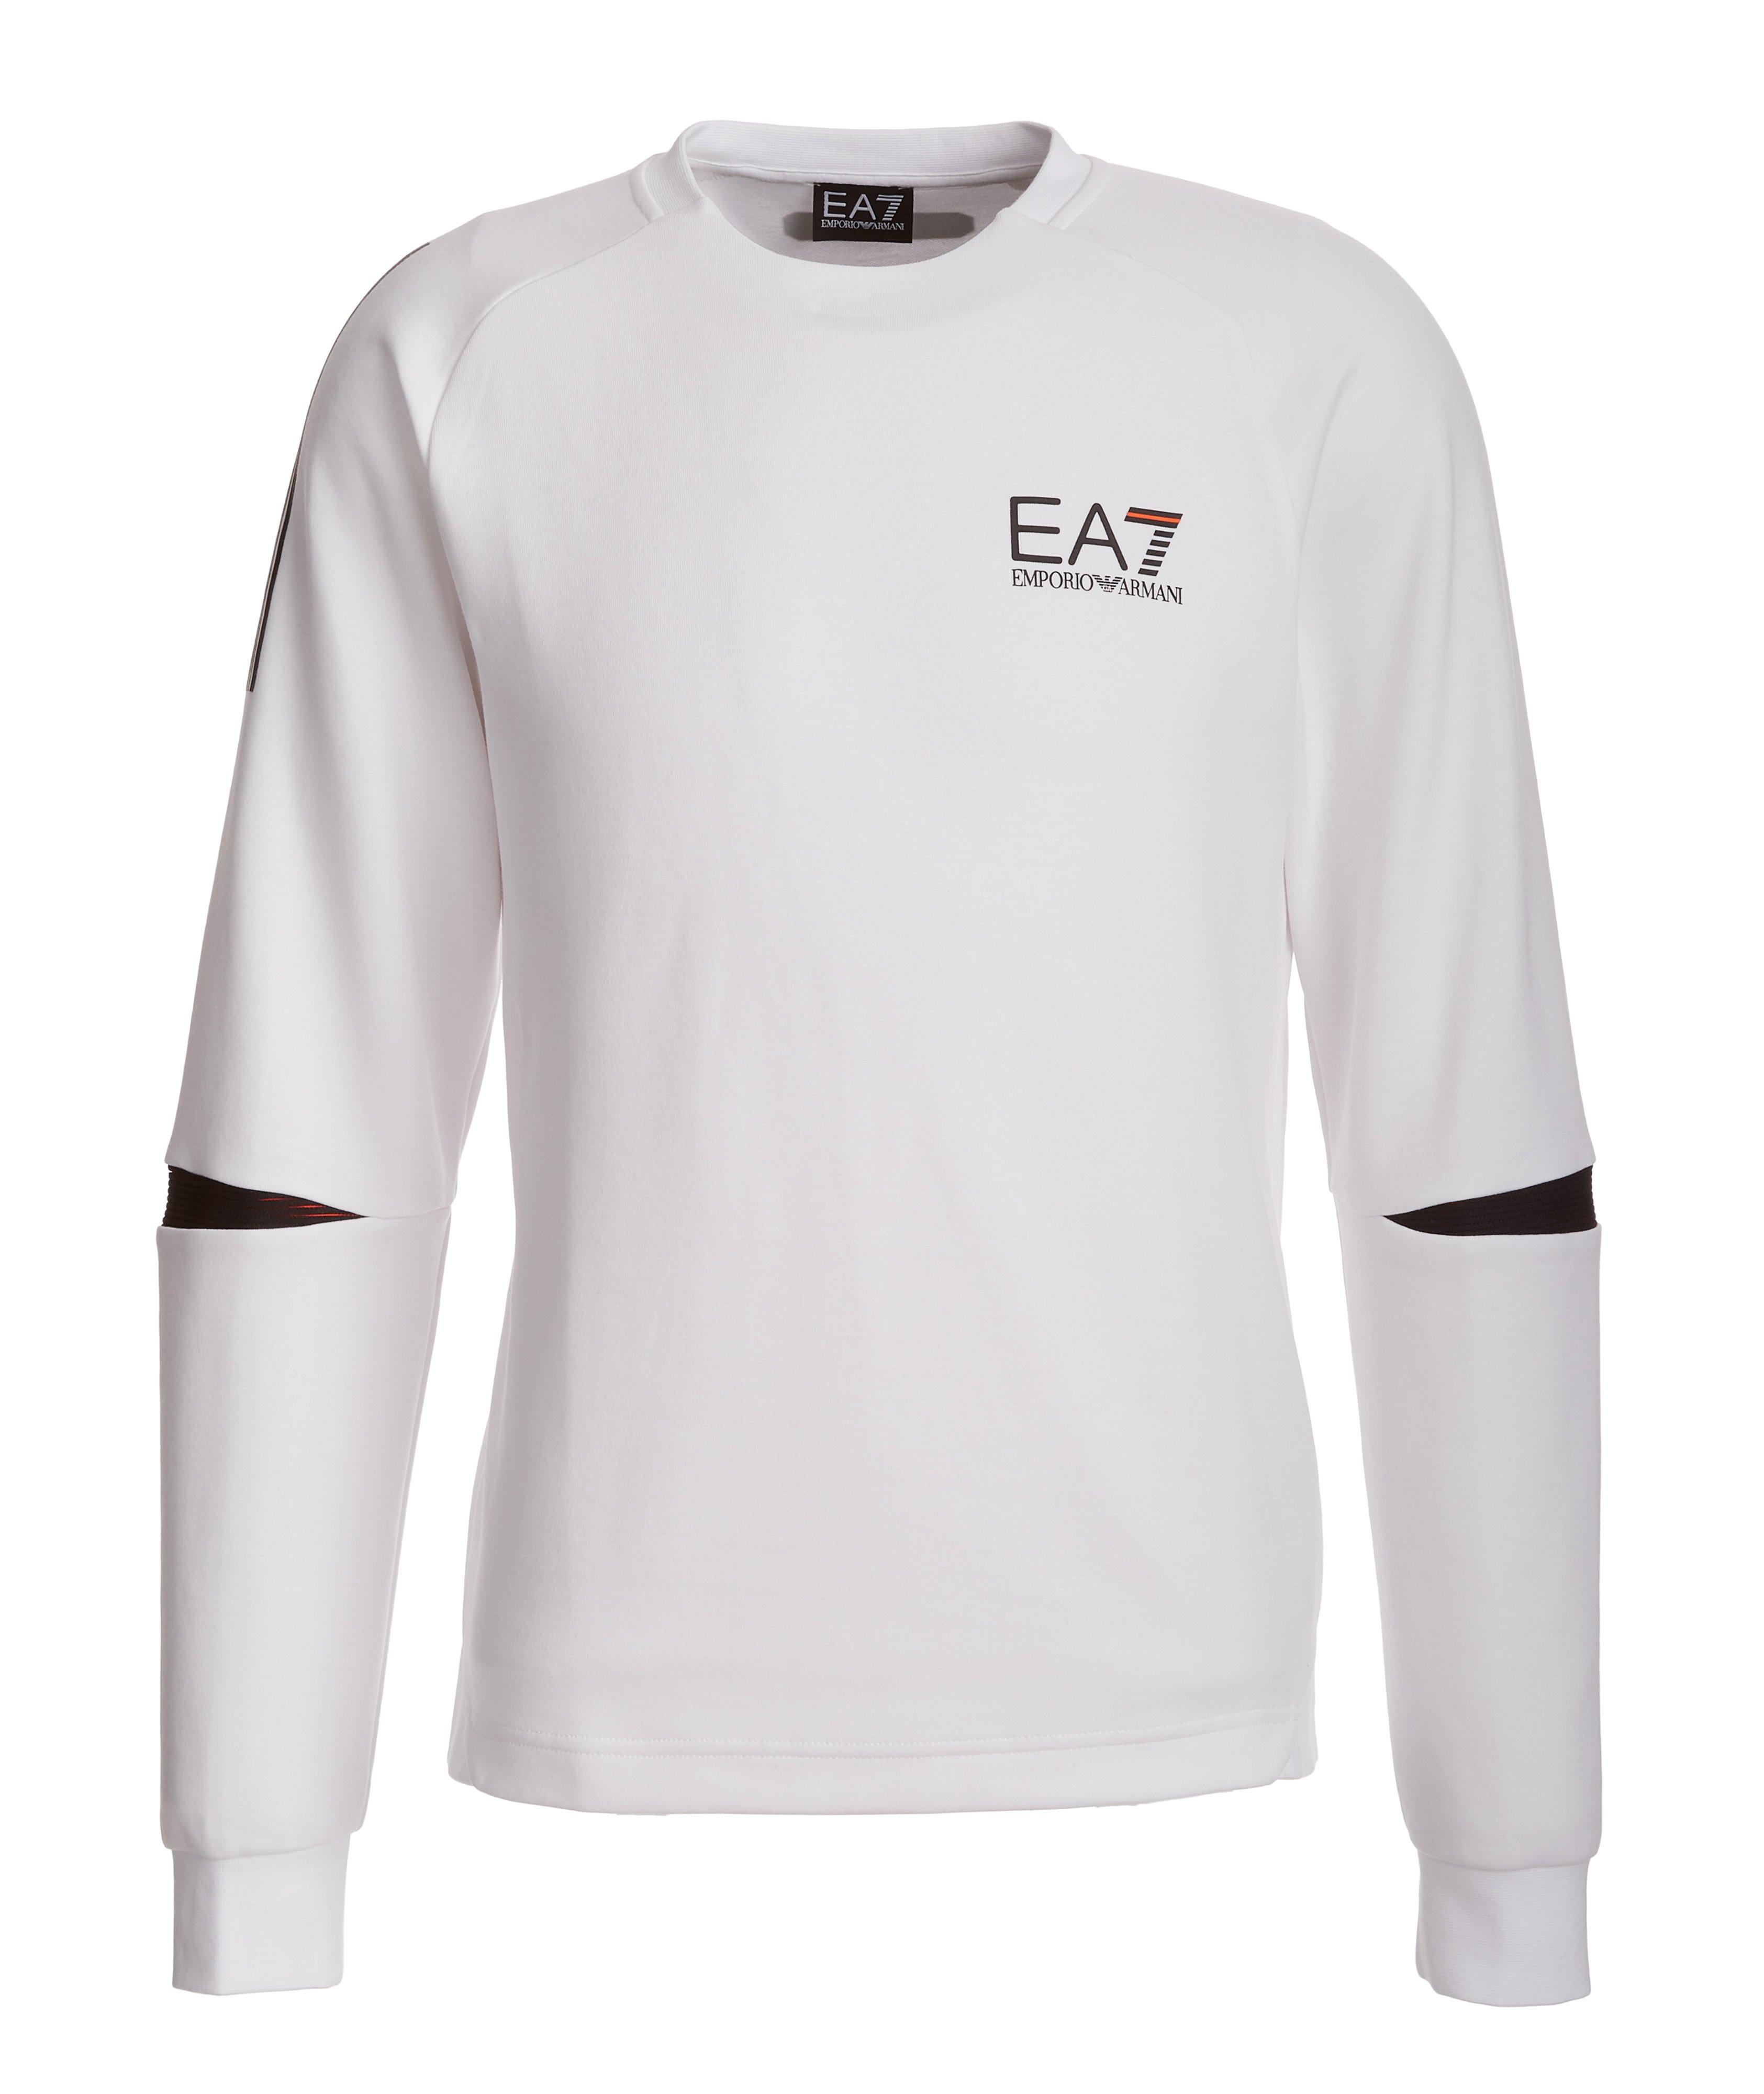 EA7 Cotton-Blend Sweatshirt image 0